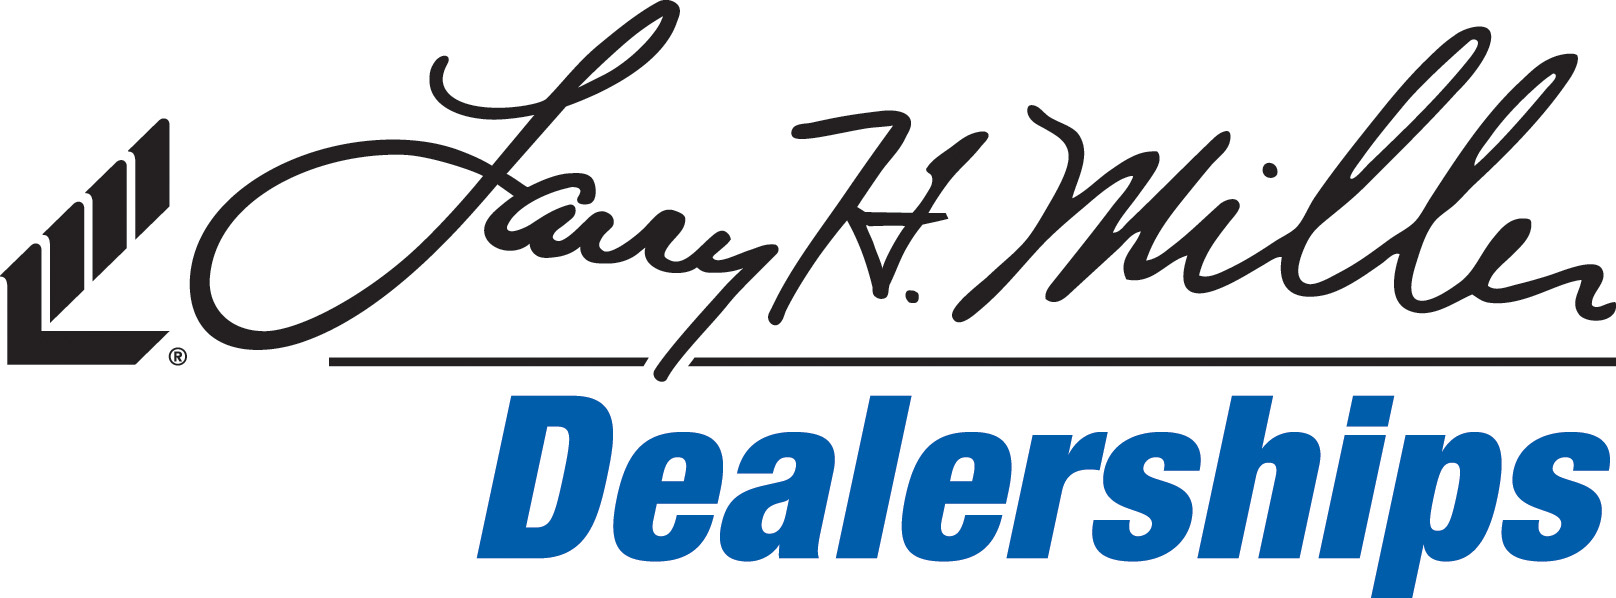 Larry H. Miller Deal